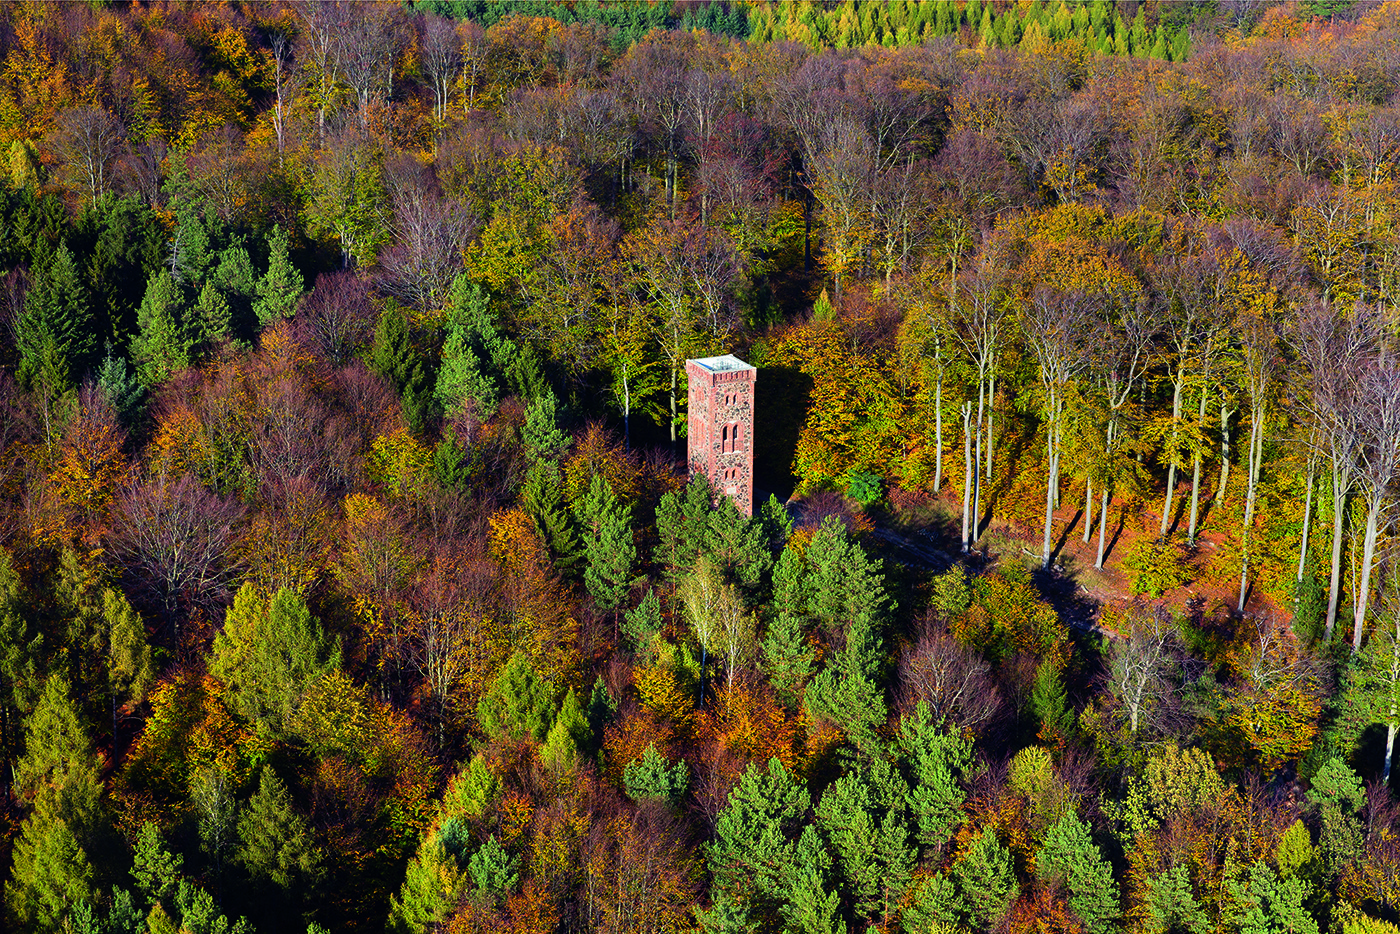 Zdj. 2. Nasza sztandarowa atrakcja turystyczna - wieża widokowa z Zielonym Lesie (fot. Krzysztof Moroz)